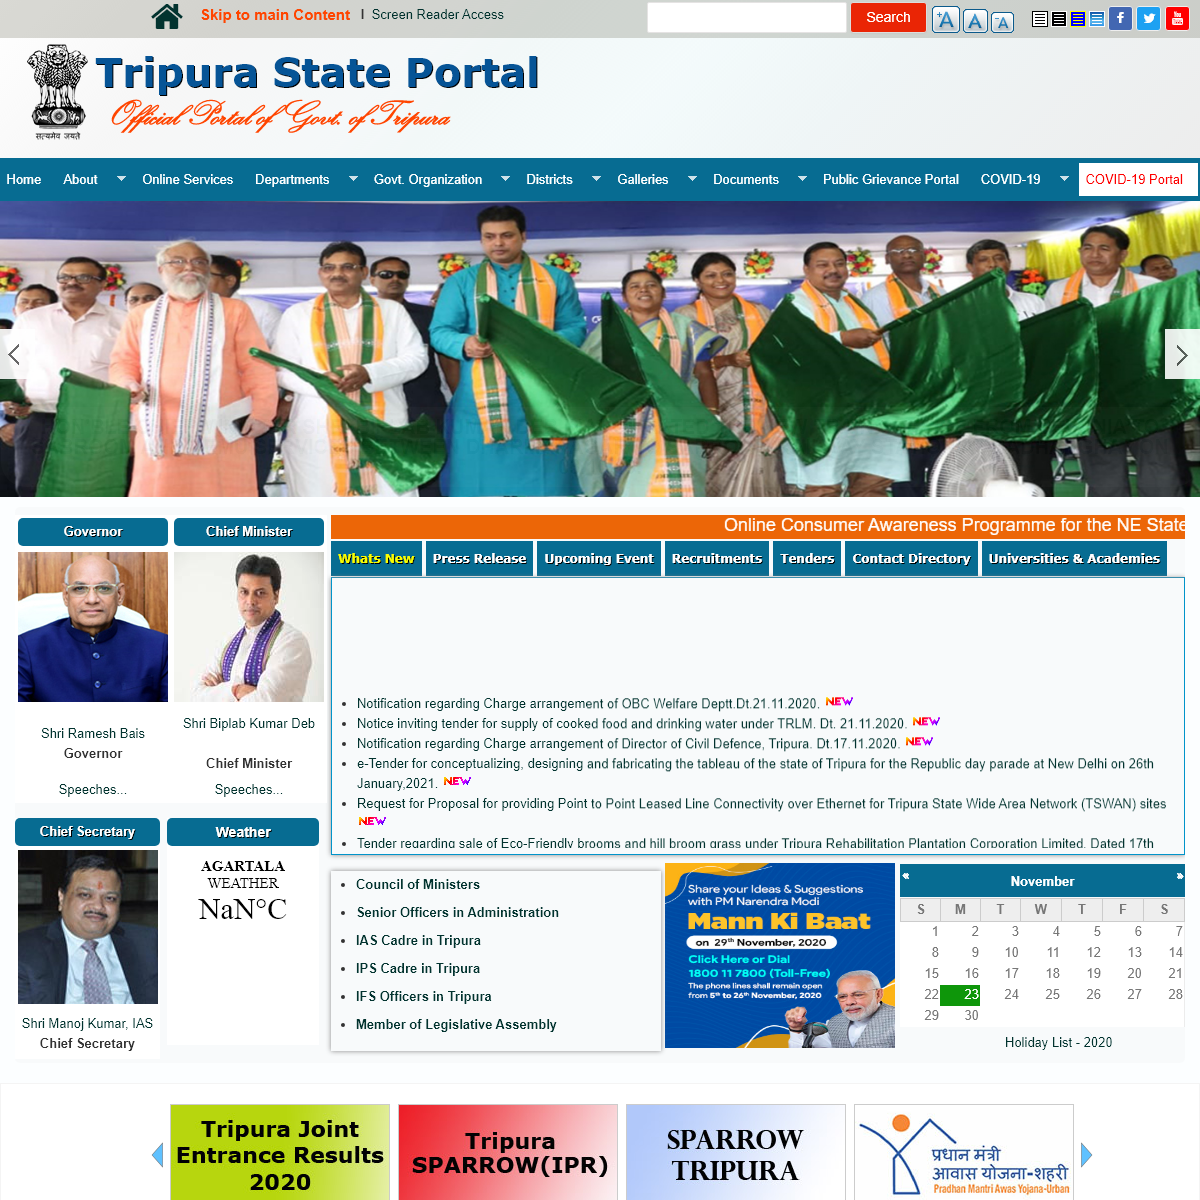 A complete backup of tripura.gov.in